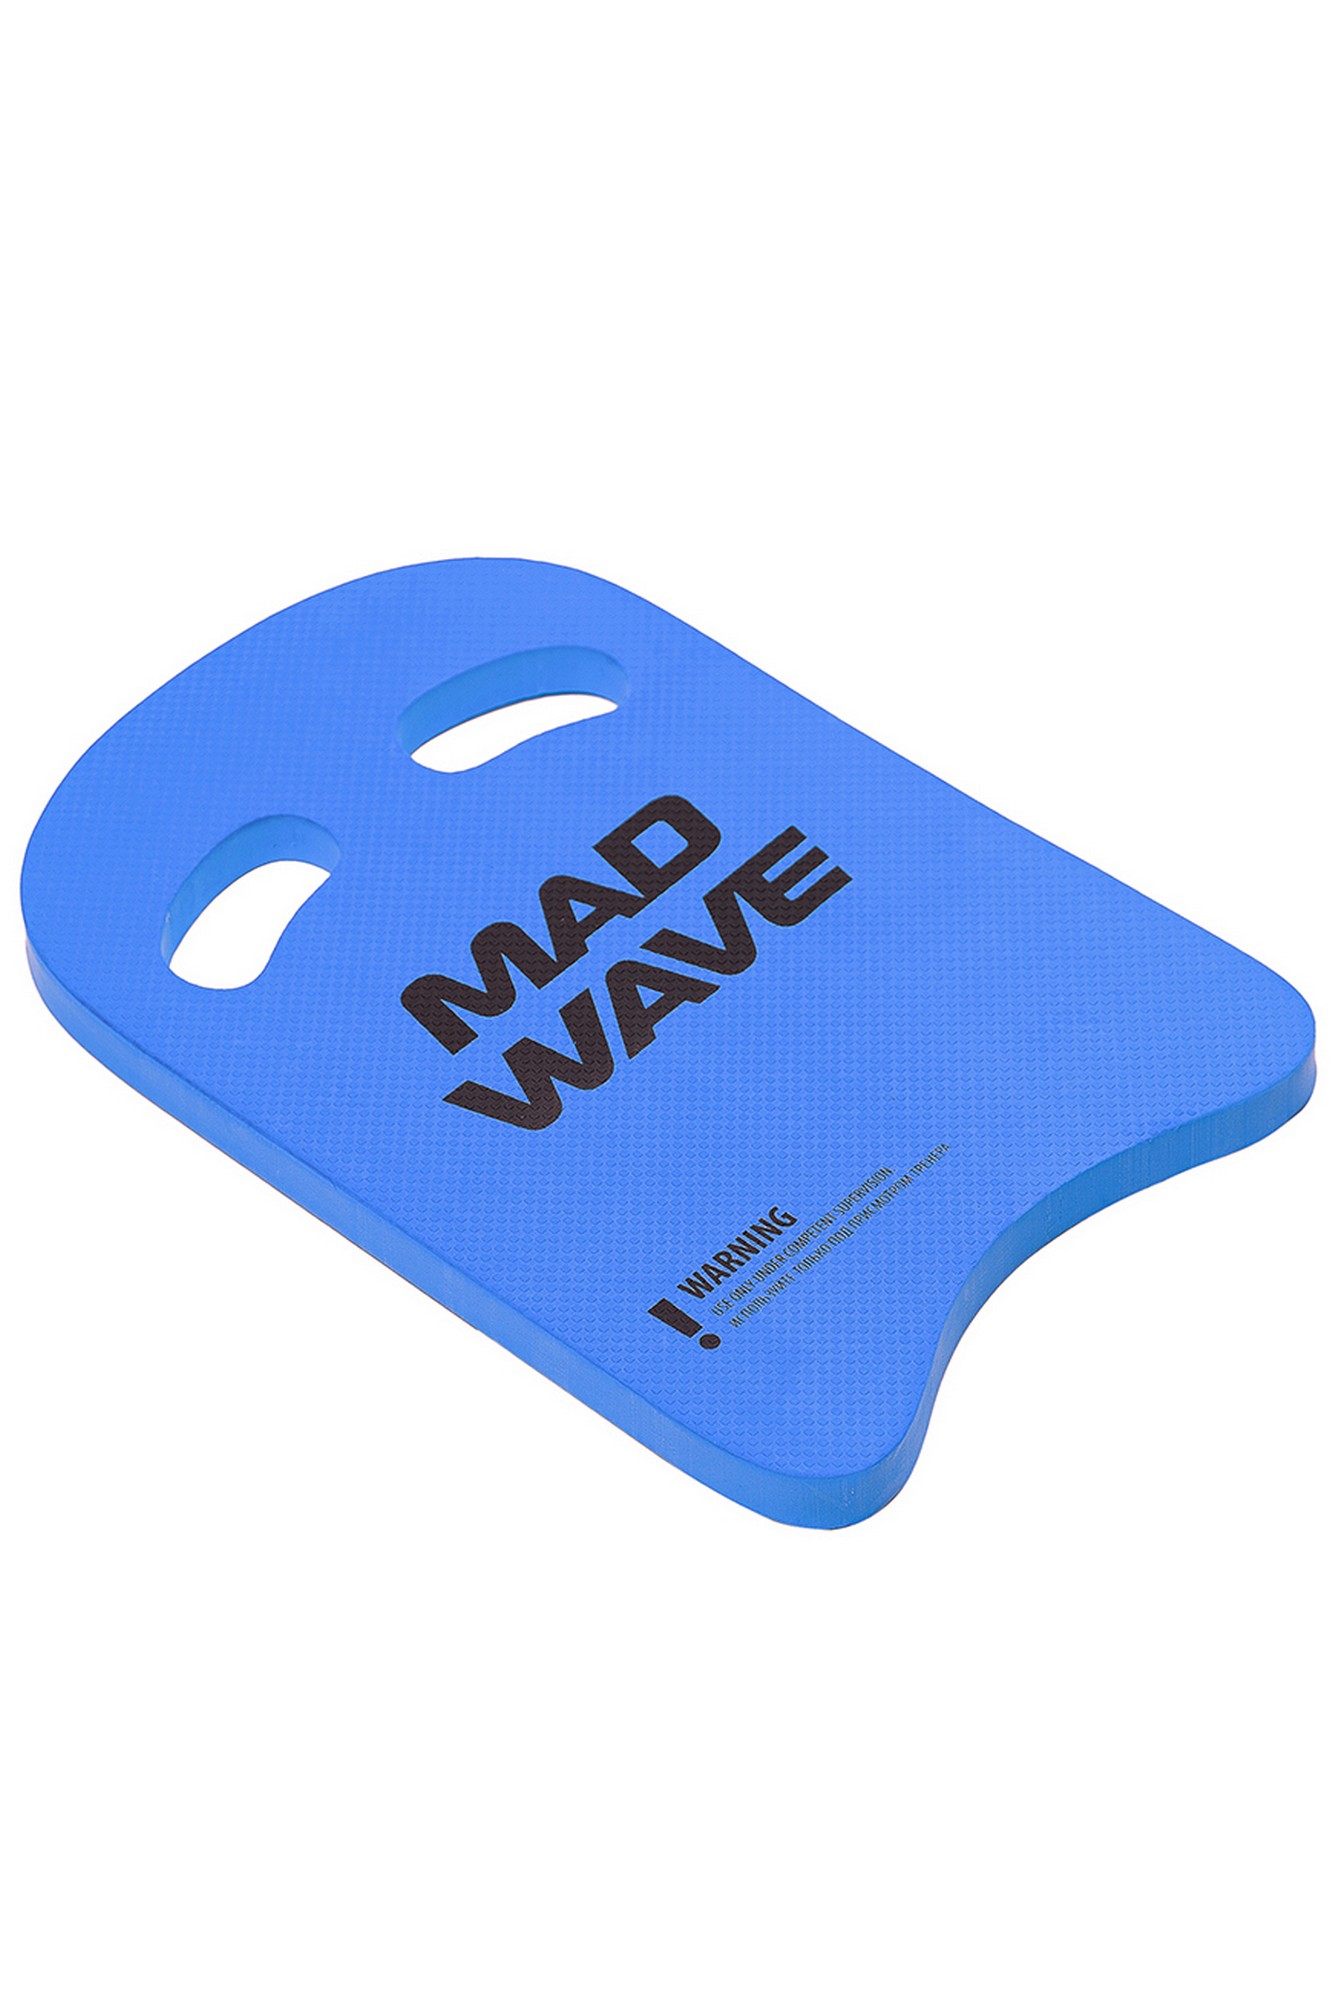    Mad Wave Kickboard Light 25 M0721 02 0 04W